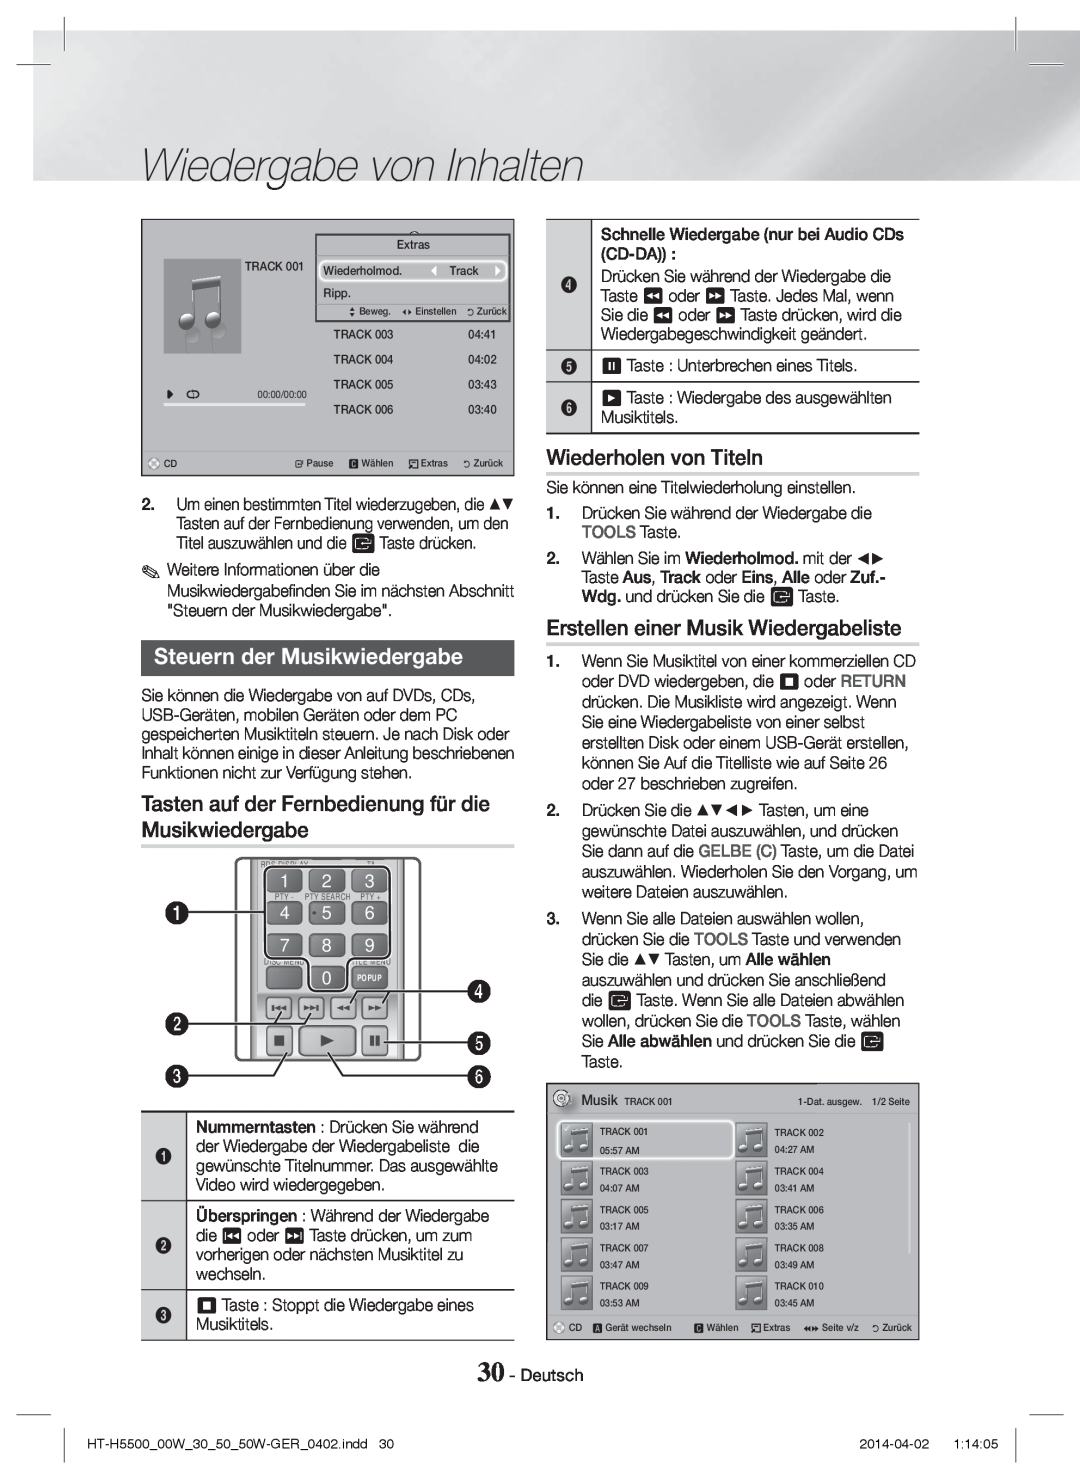 Samsung HT-H5500W/EN manual Steuern der Musikwiedergabe, Wiederholen von Titeln, Erstellen einer Musik Wiedergabeliste 